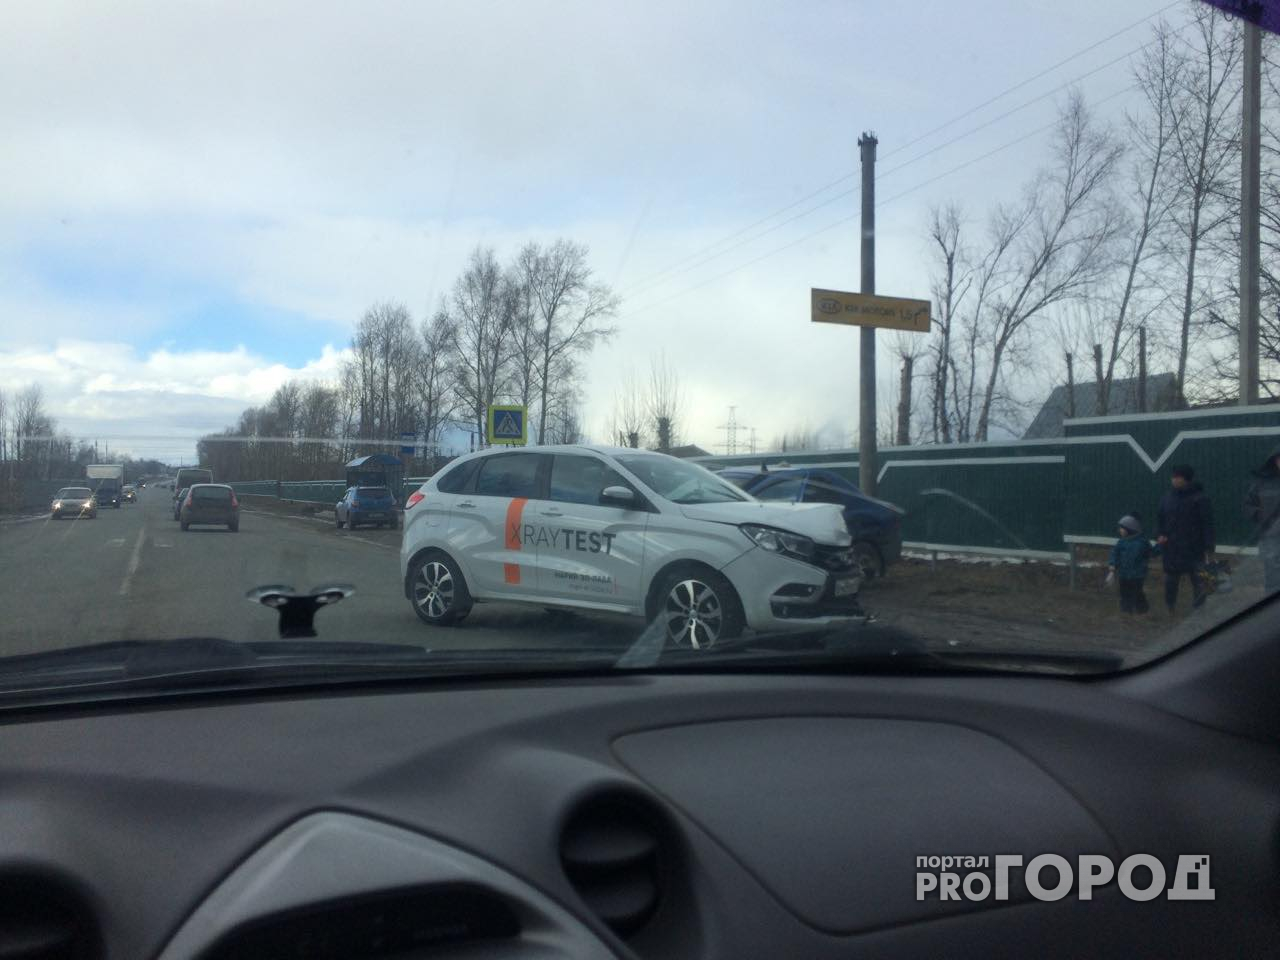 В Йошкар-Оле водитель попал в аварию на тестовом автомобиле